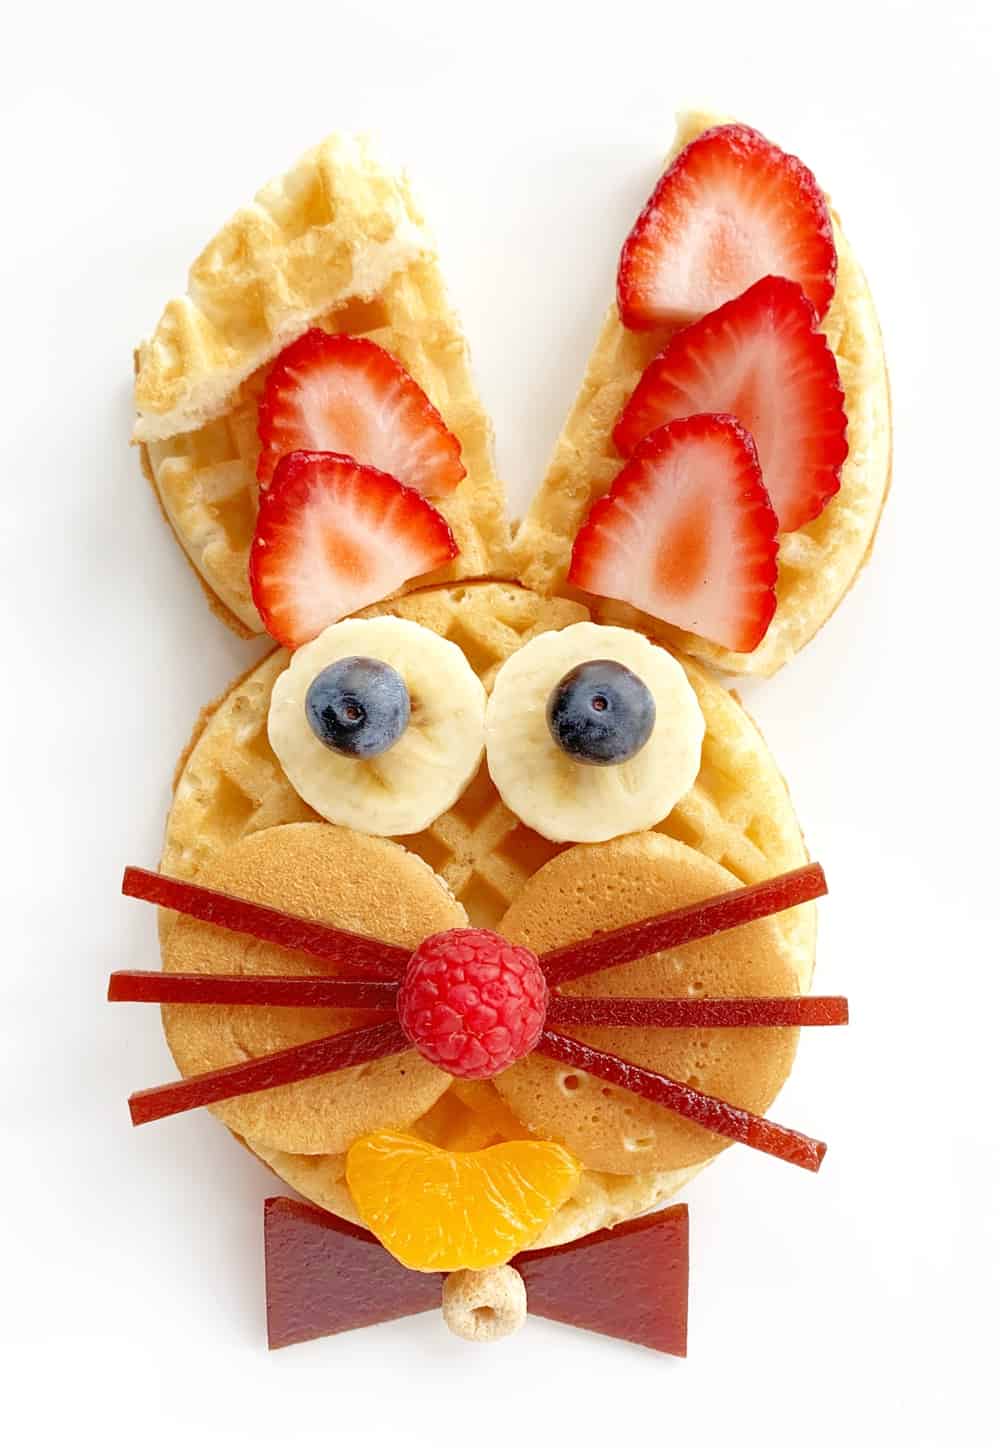 Easter breakfast bunny waffles